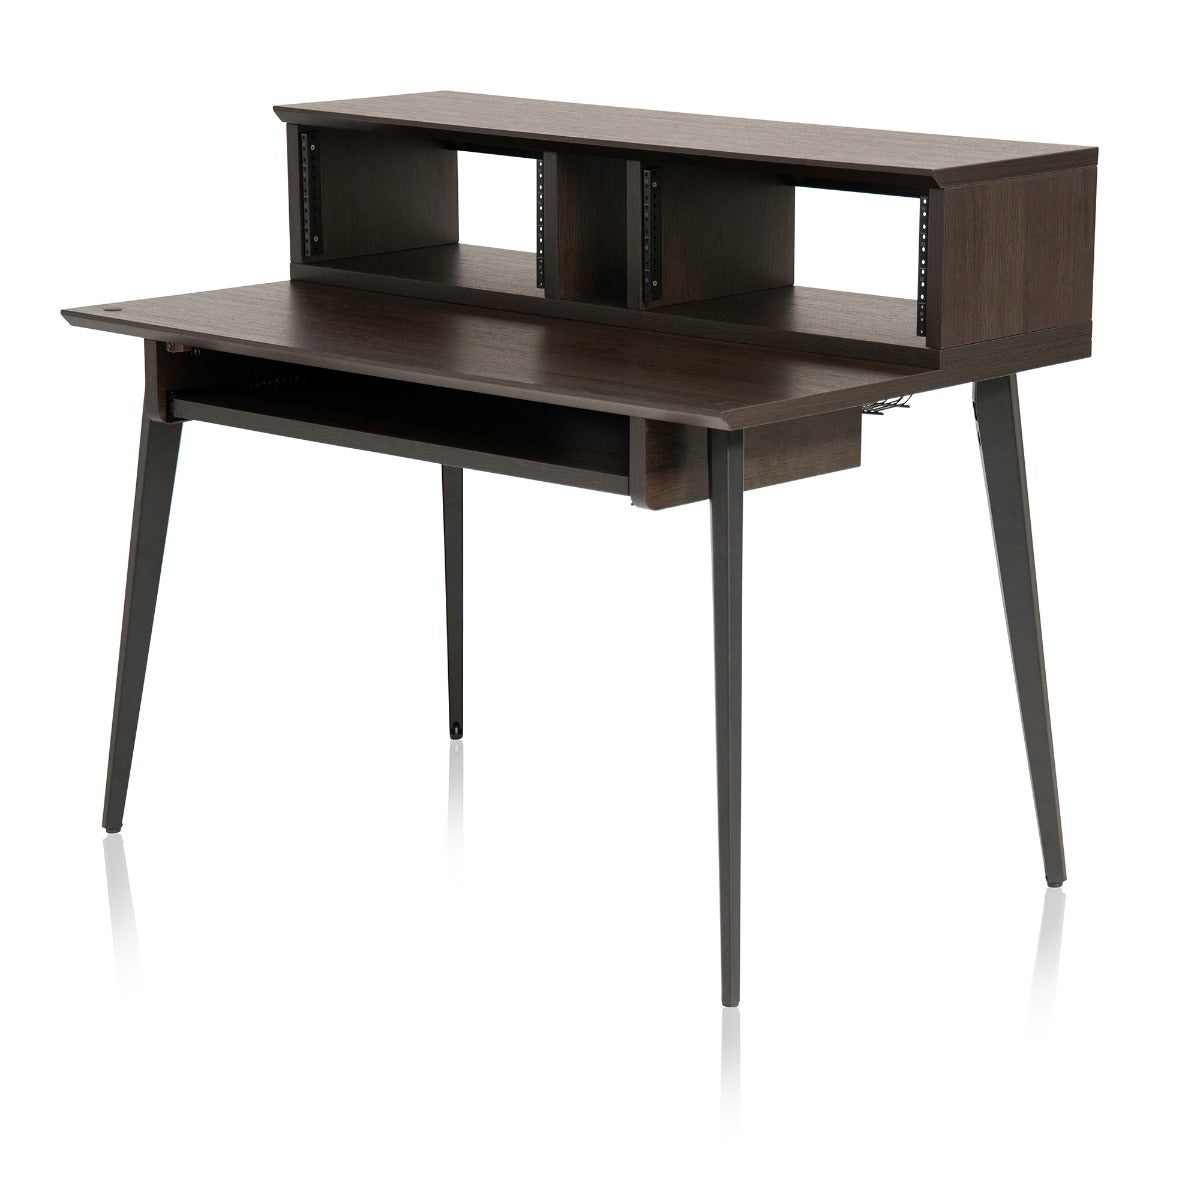 Left angled image of the Gator Frameworks Elite Series Furniture Desk  - Brown